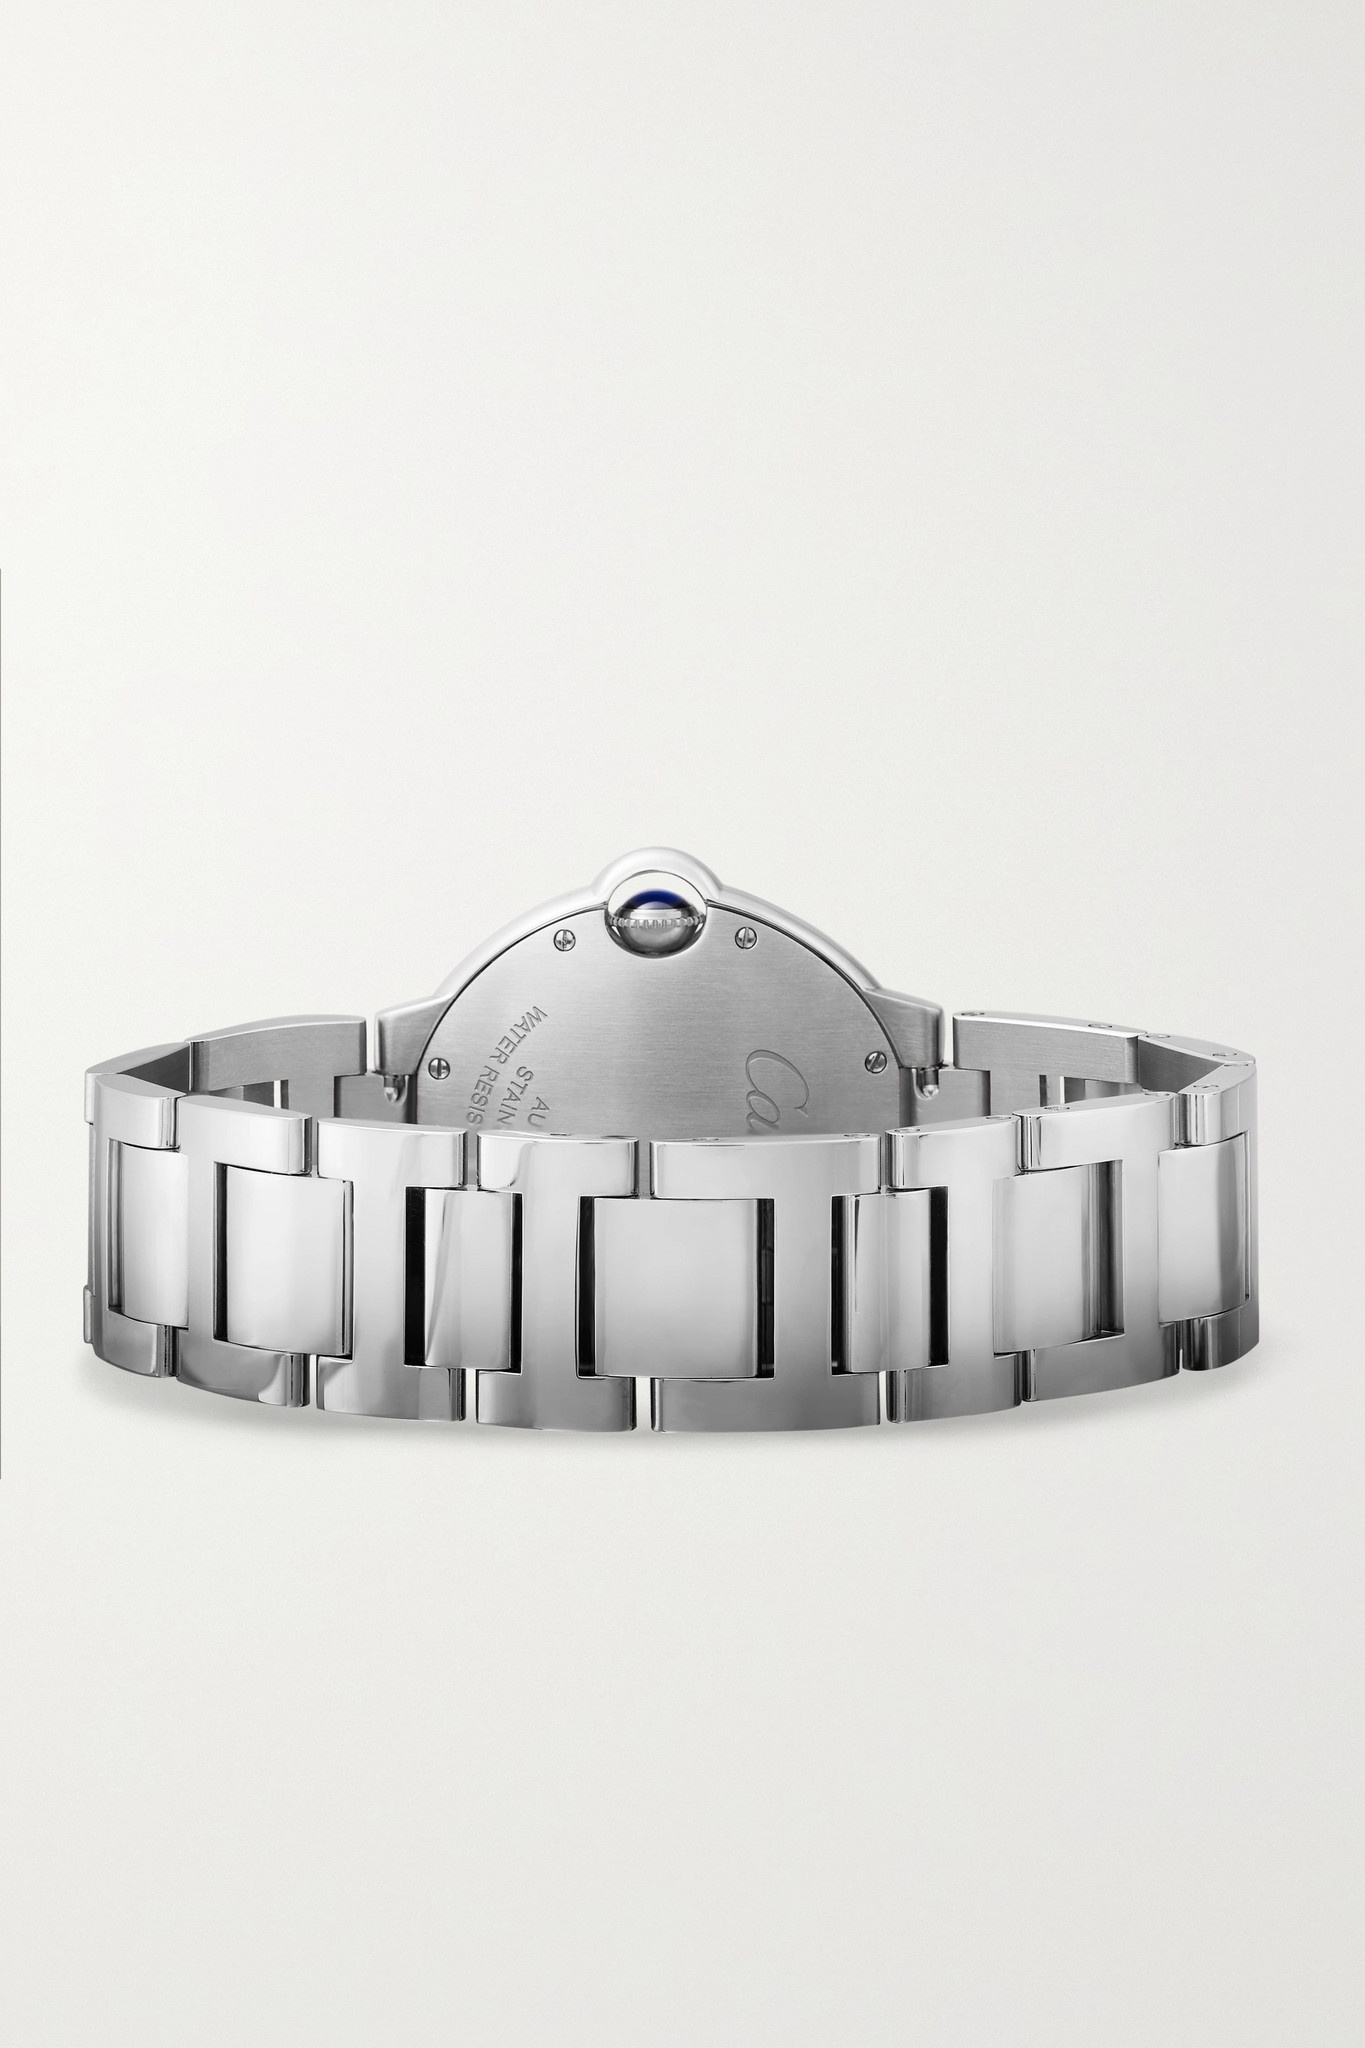 Ballon Bleu de Cartier Automatic 36.6mm stainless steel watch - 6